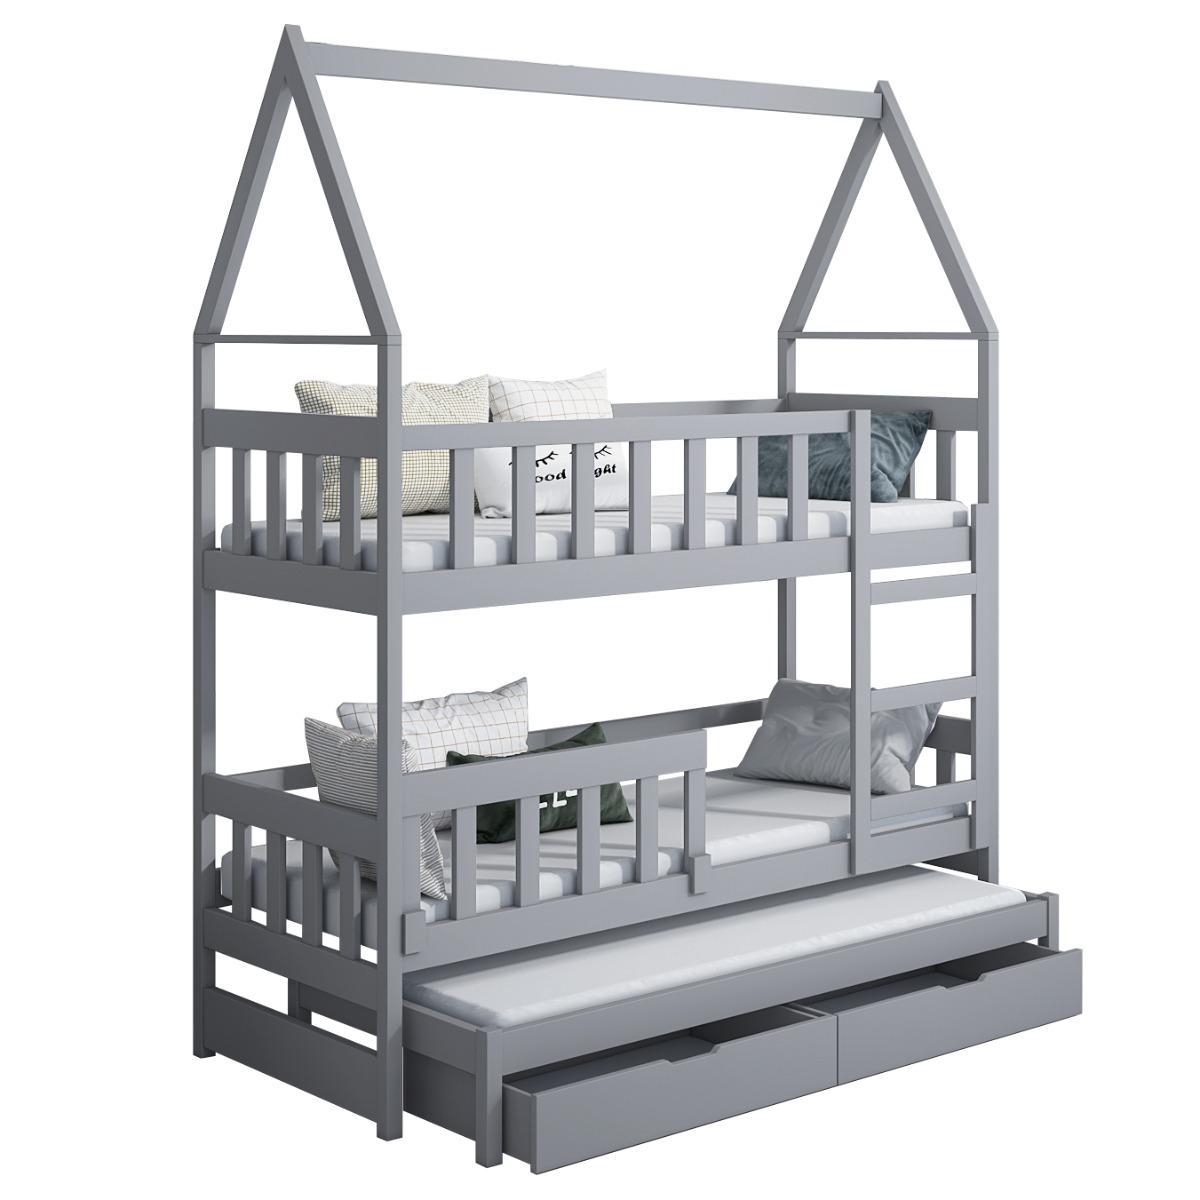 Łóżko piętrowe DOMEK drewno szare miejsce do spania dla 3 osób + materace sprężynowe 180x75 cm + barierka dolna do pokoju dziecka 3 Full Screen